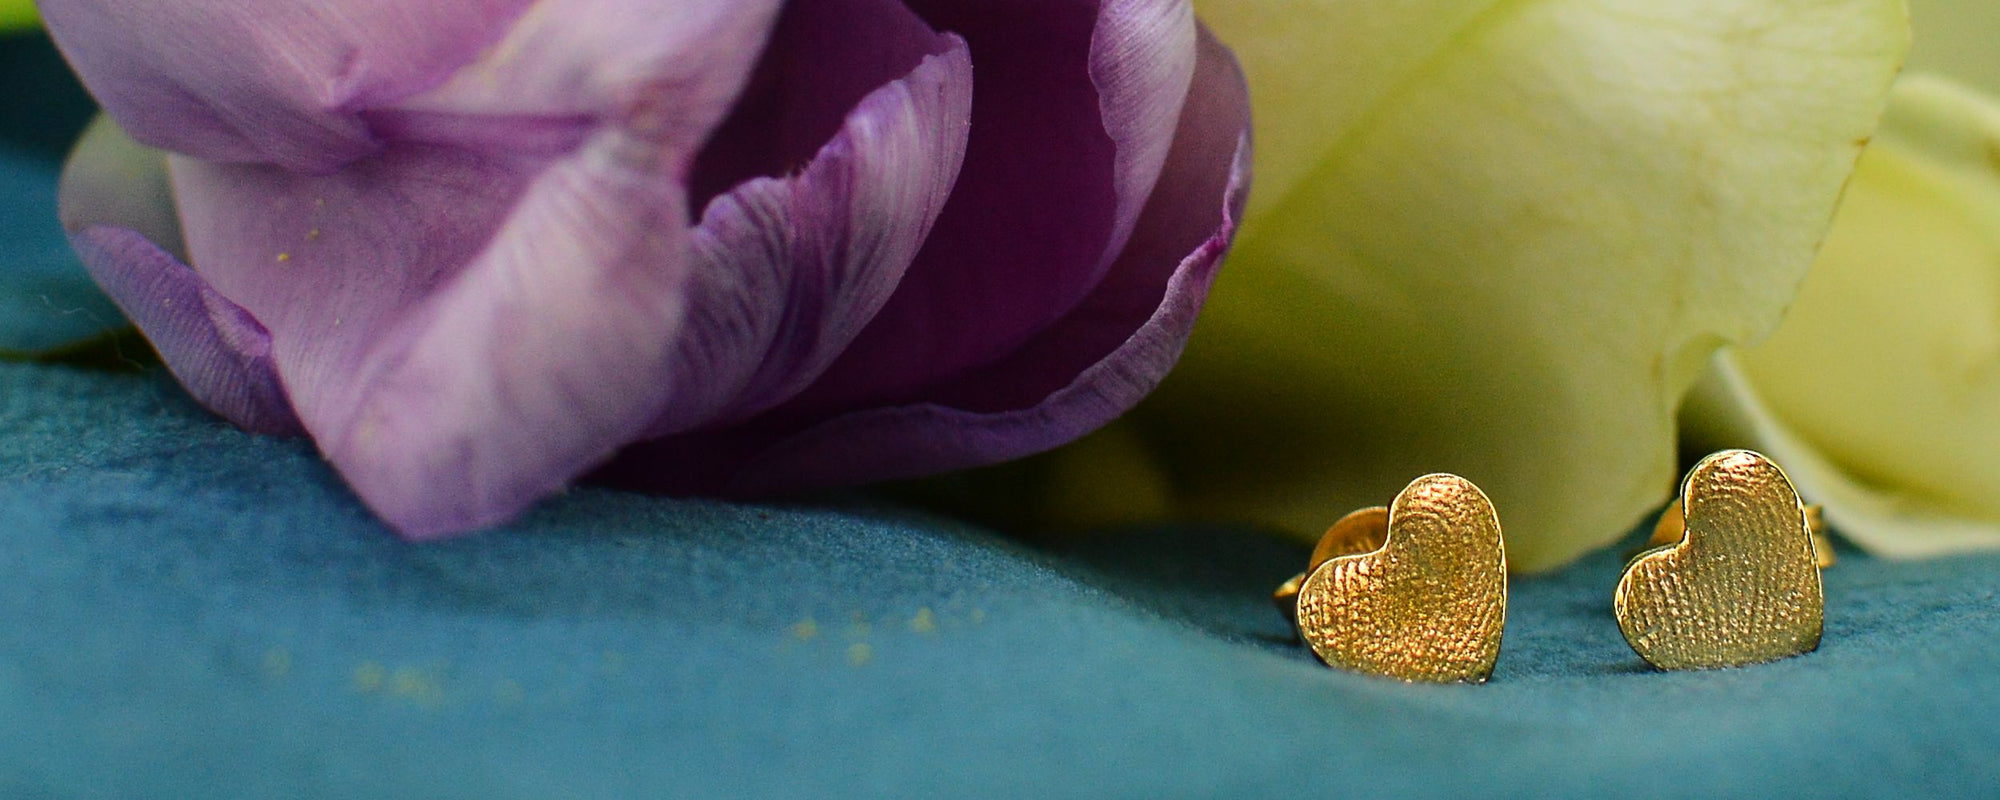 Personalised Earrings for Mum in gold | Heart Earrings with 2 children's fingerprints | Sophia Alexander Fingerprint Jewellery | Handmade | Suffolk UK